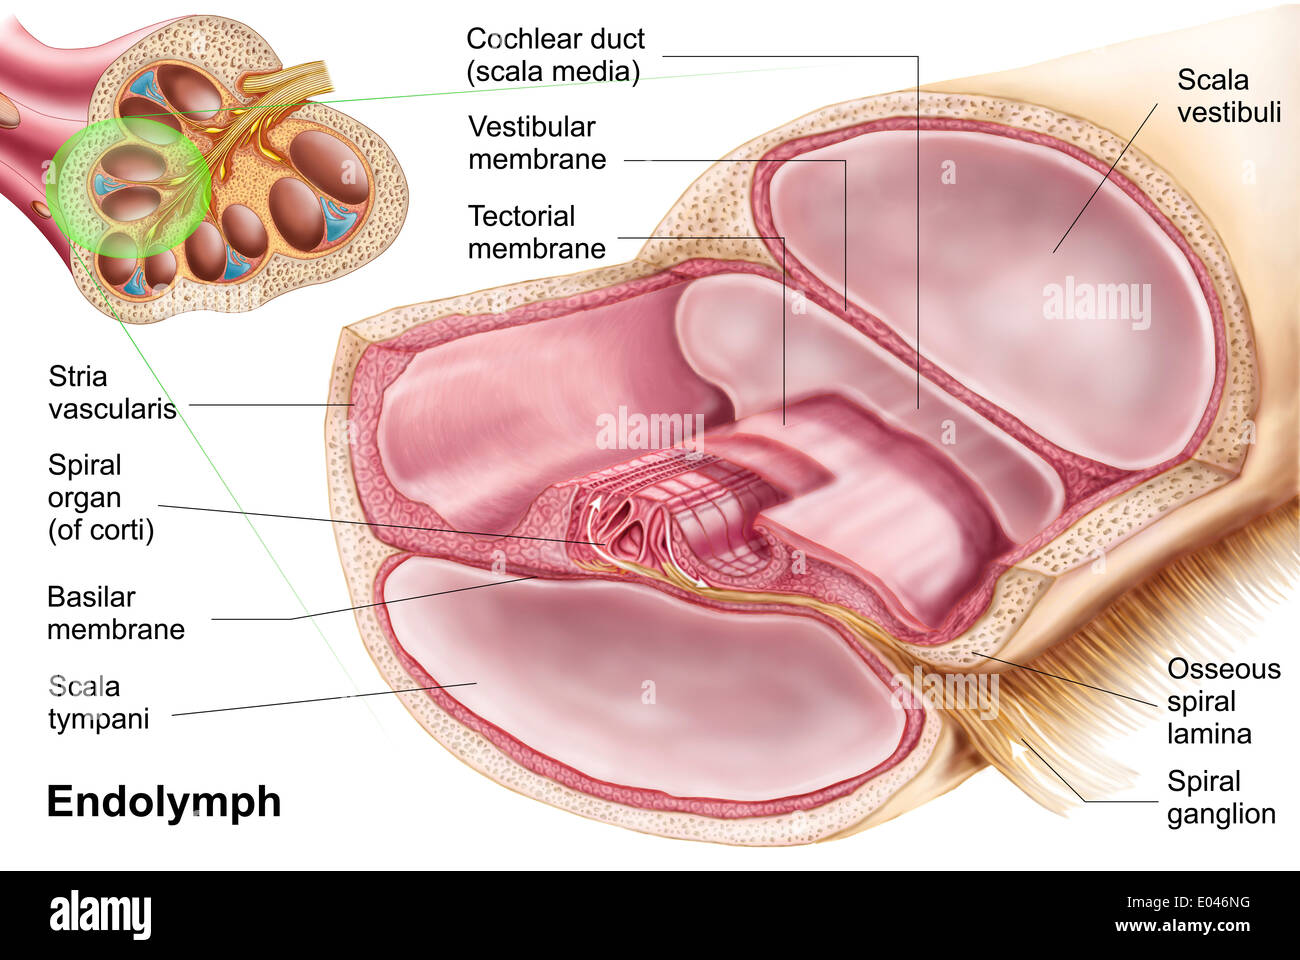 Medical illustrazione che mostra endolymph nel labirinto membranoso dell'orecchio interno. Foto Stock